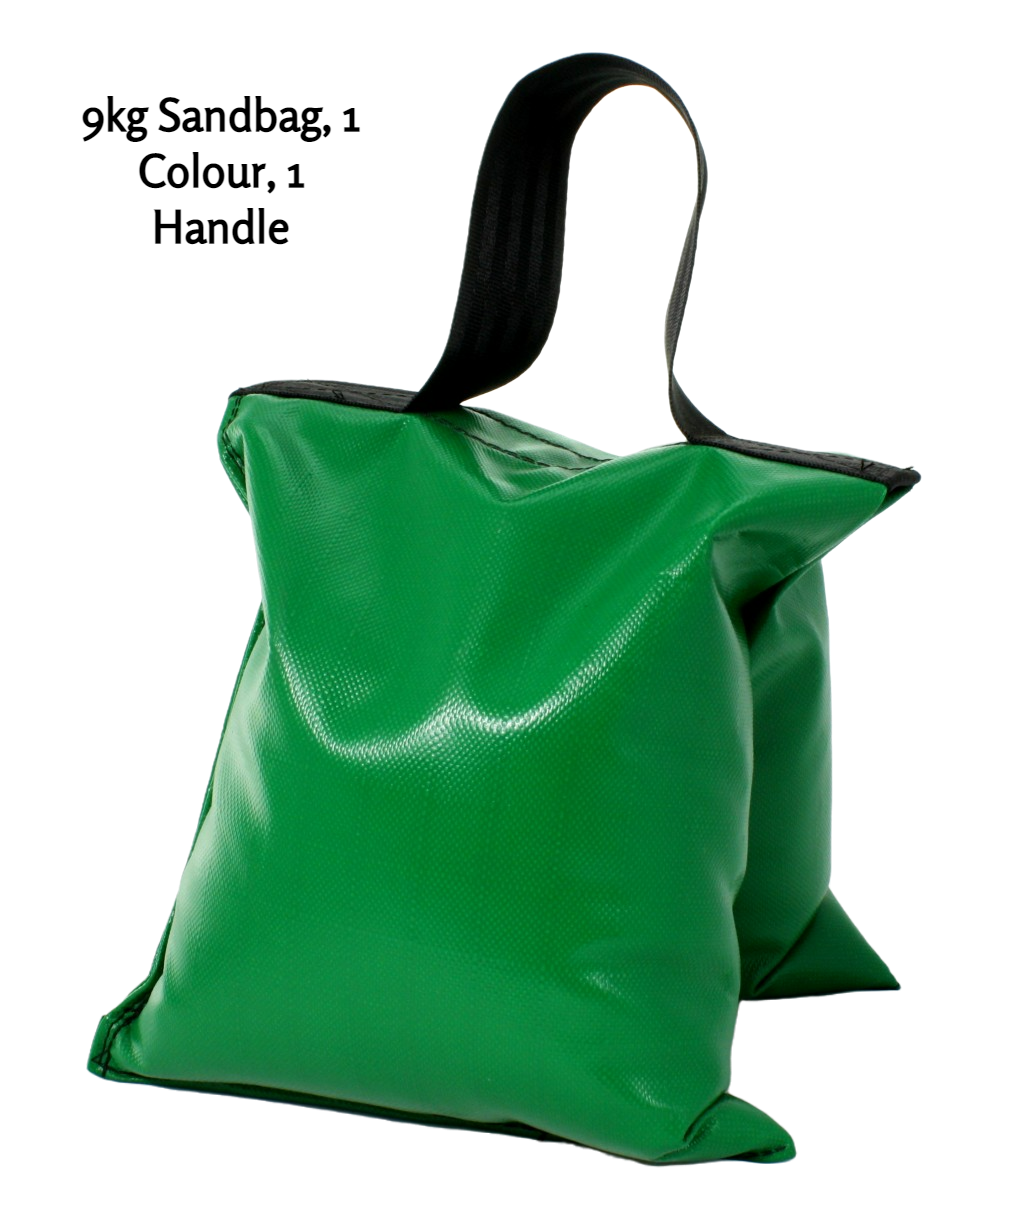 9kg sandbag in green PVC